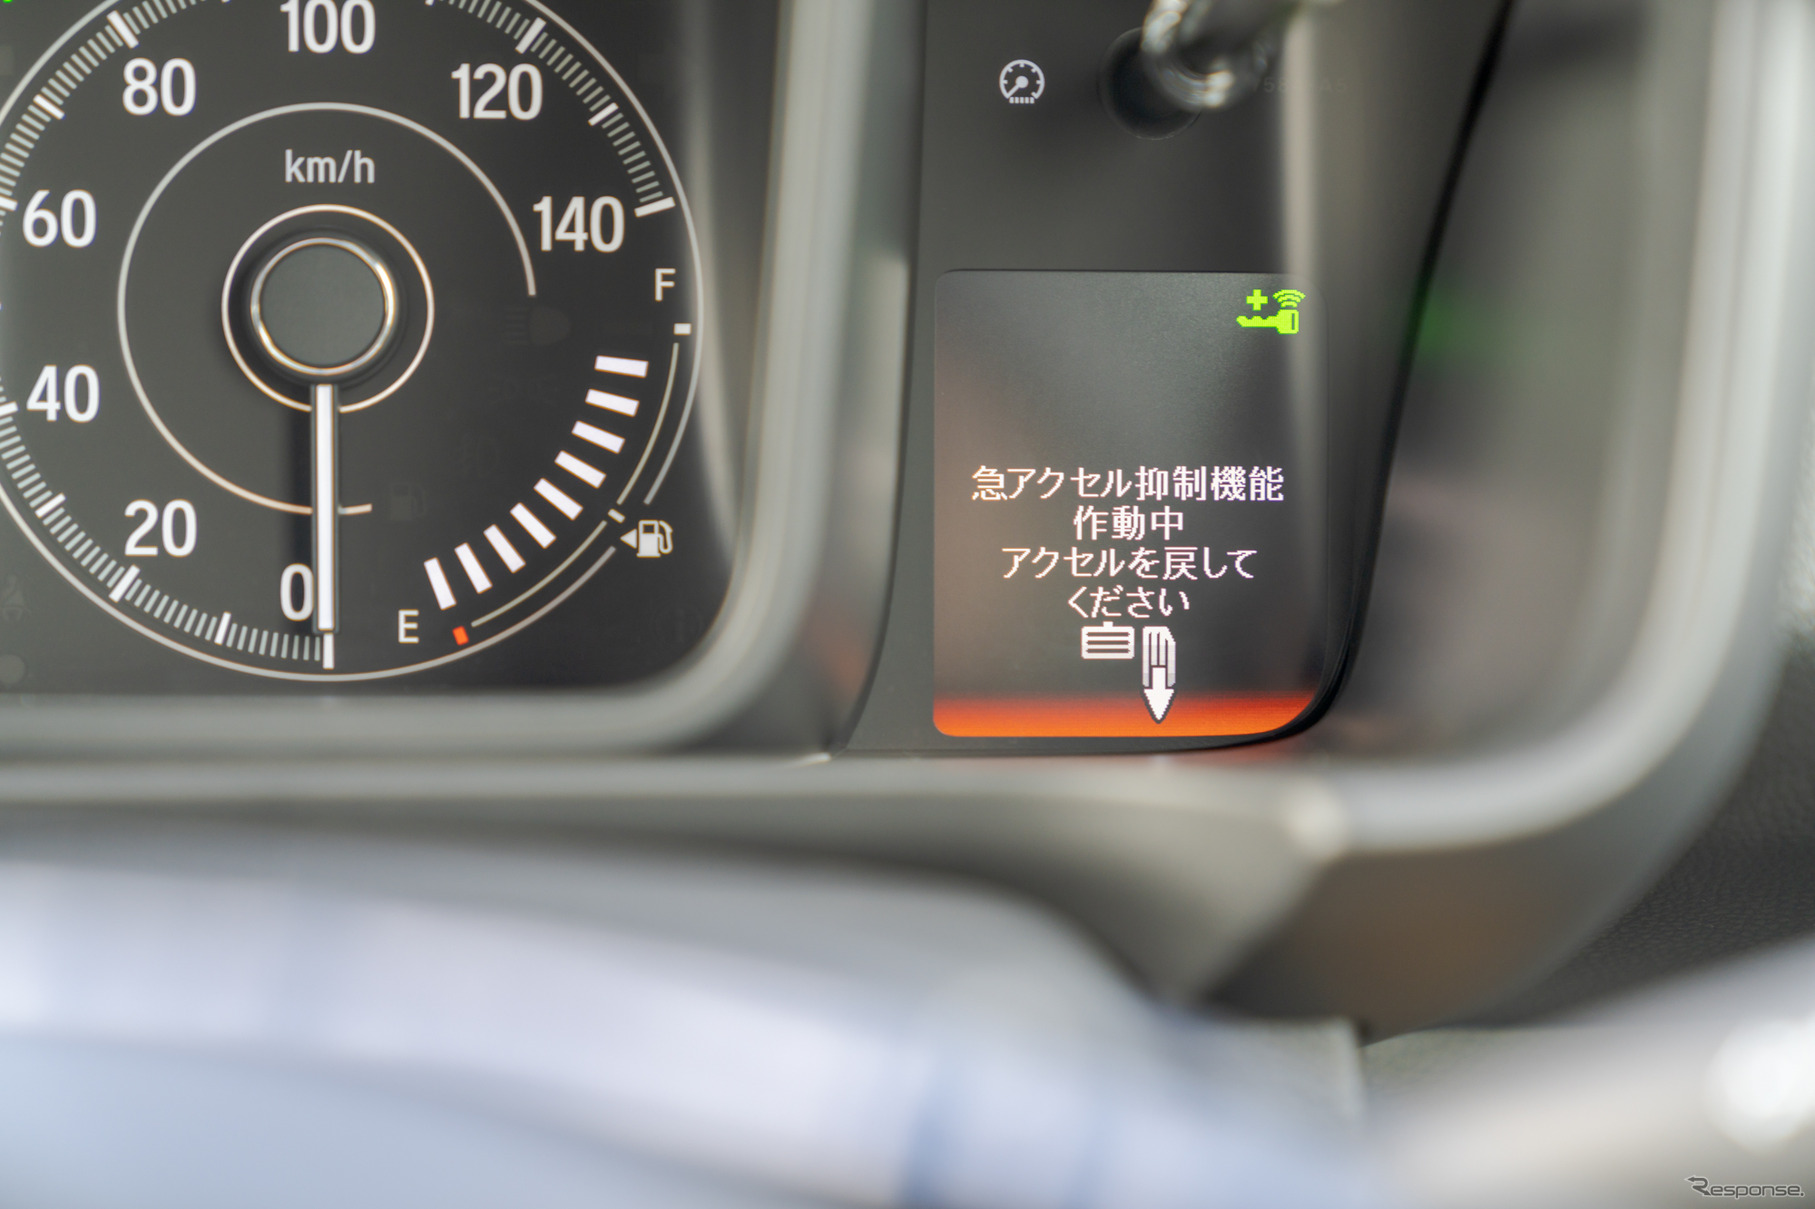 急アクセル抑制機能が発動するとこのような表示に切り替わり、車内にはアラート音が鳴り続ける。パニックになった場合、表示だけでは見落としてしまいそうだが、音でも気付かされるので落ち着きを取り戻しやすい。